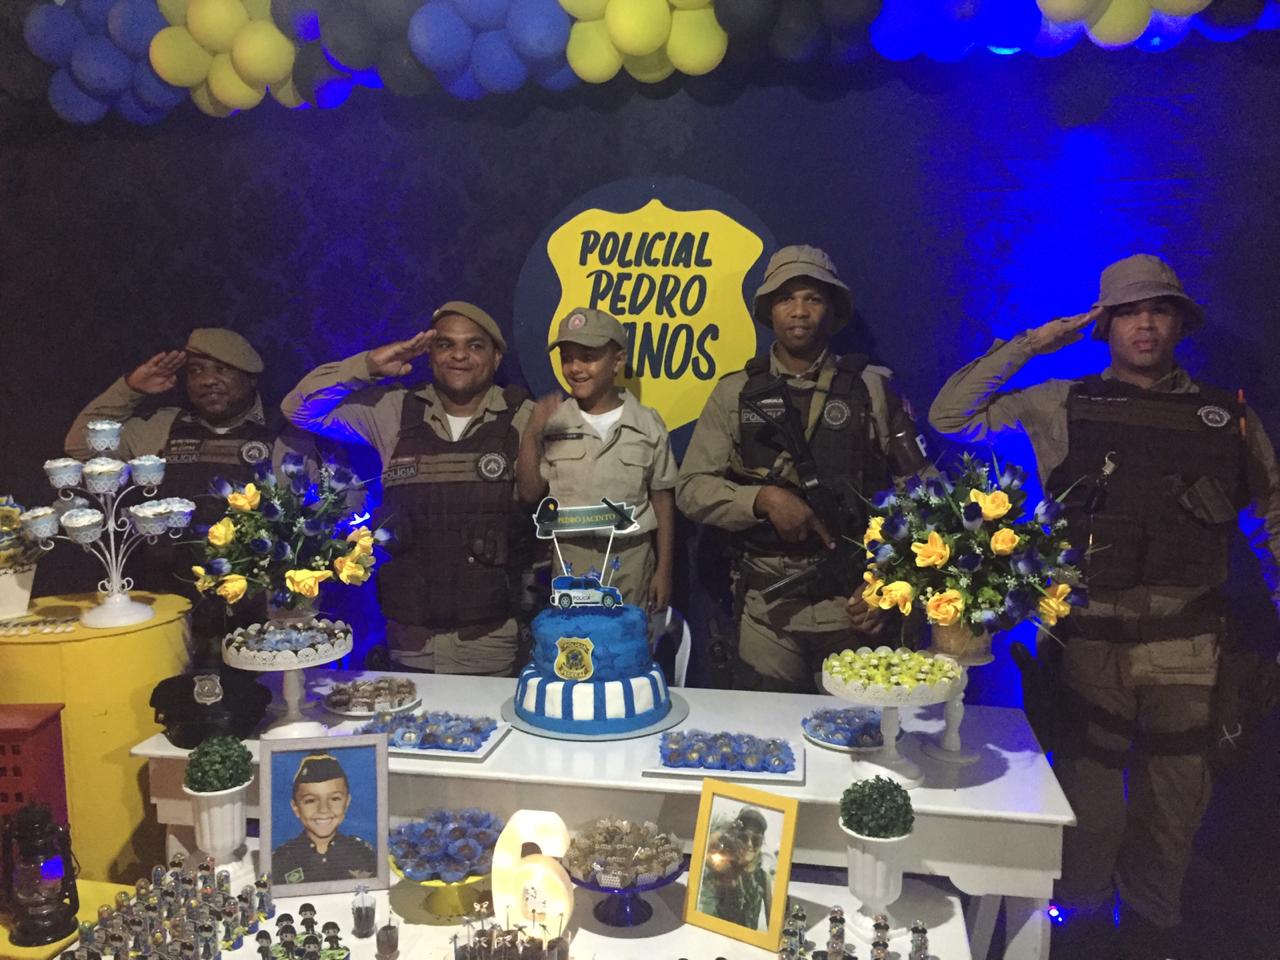 Criança faz aniversário com tema da PM e ganha surpresa de policiais